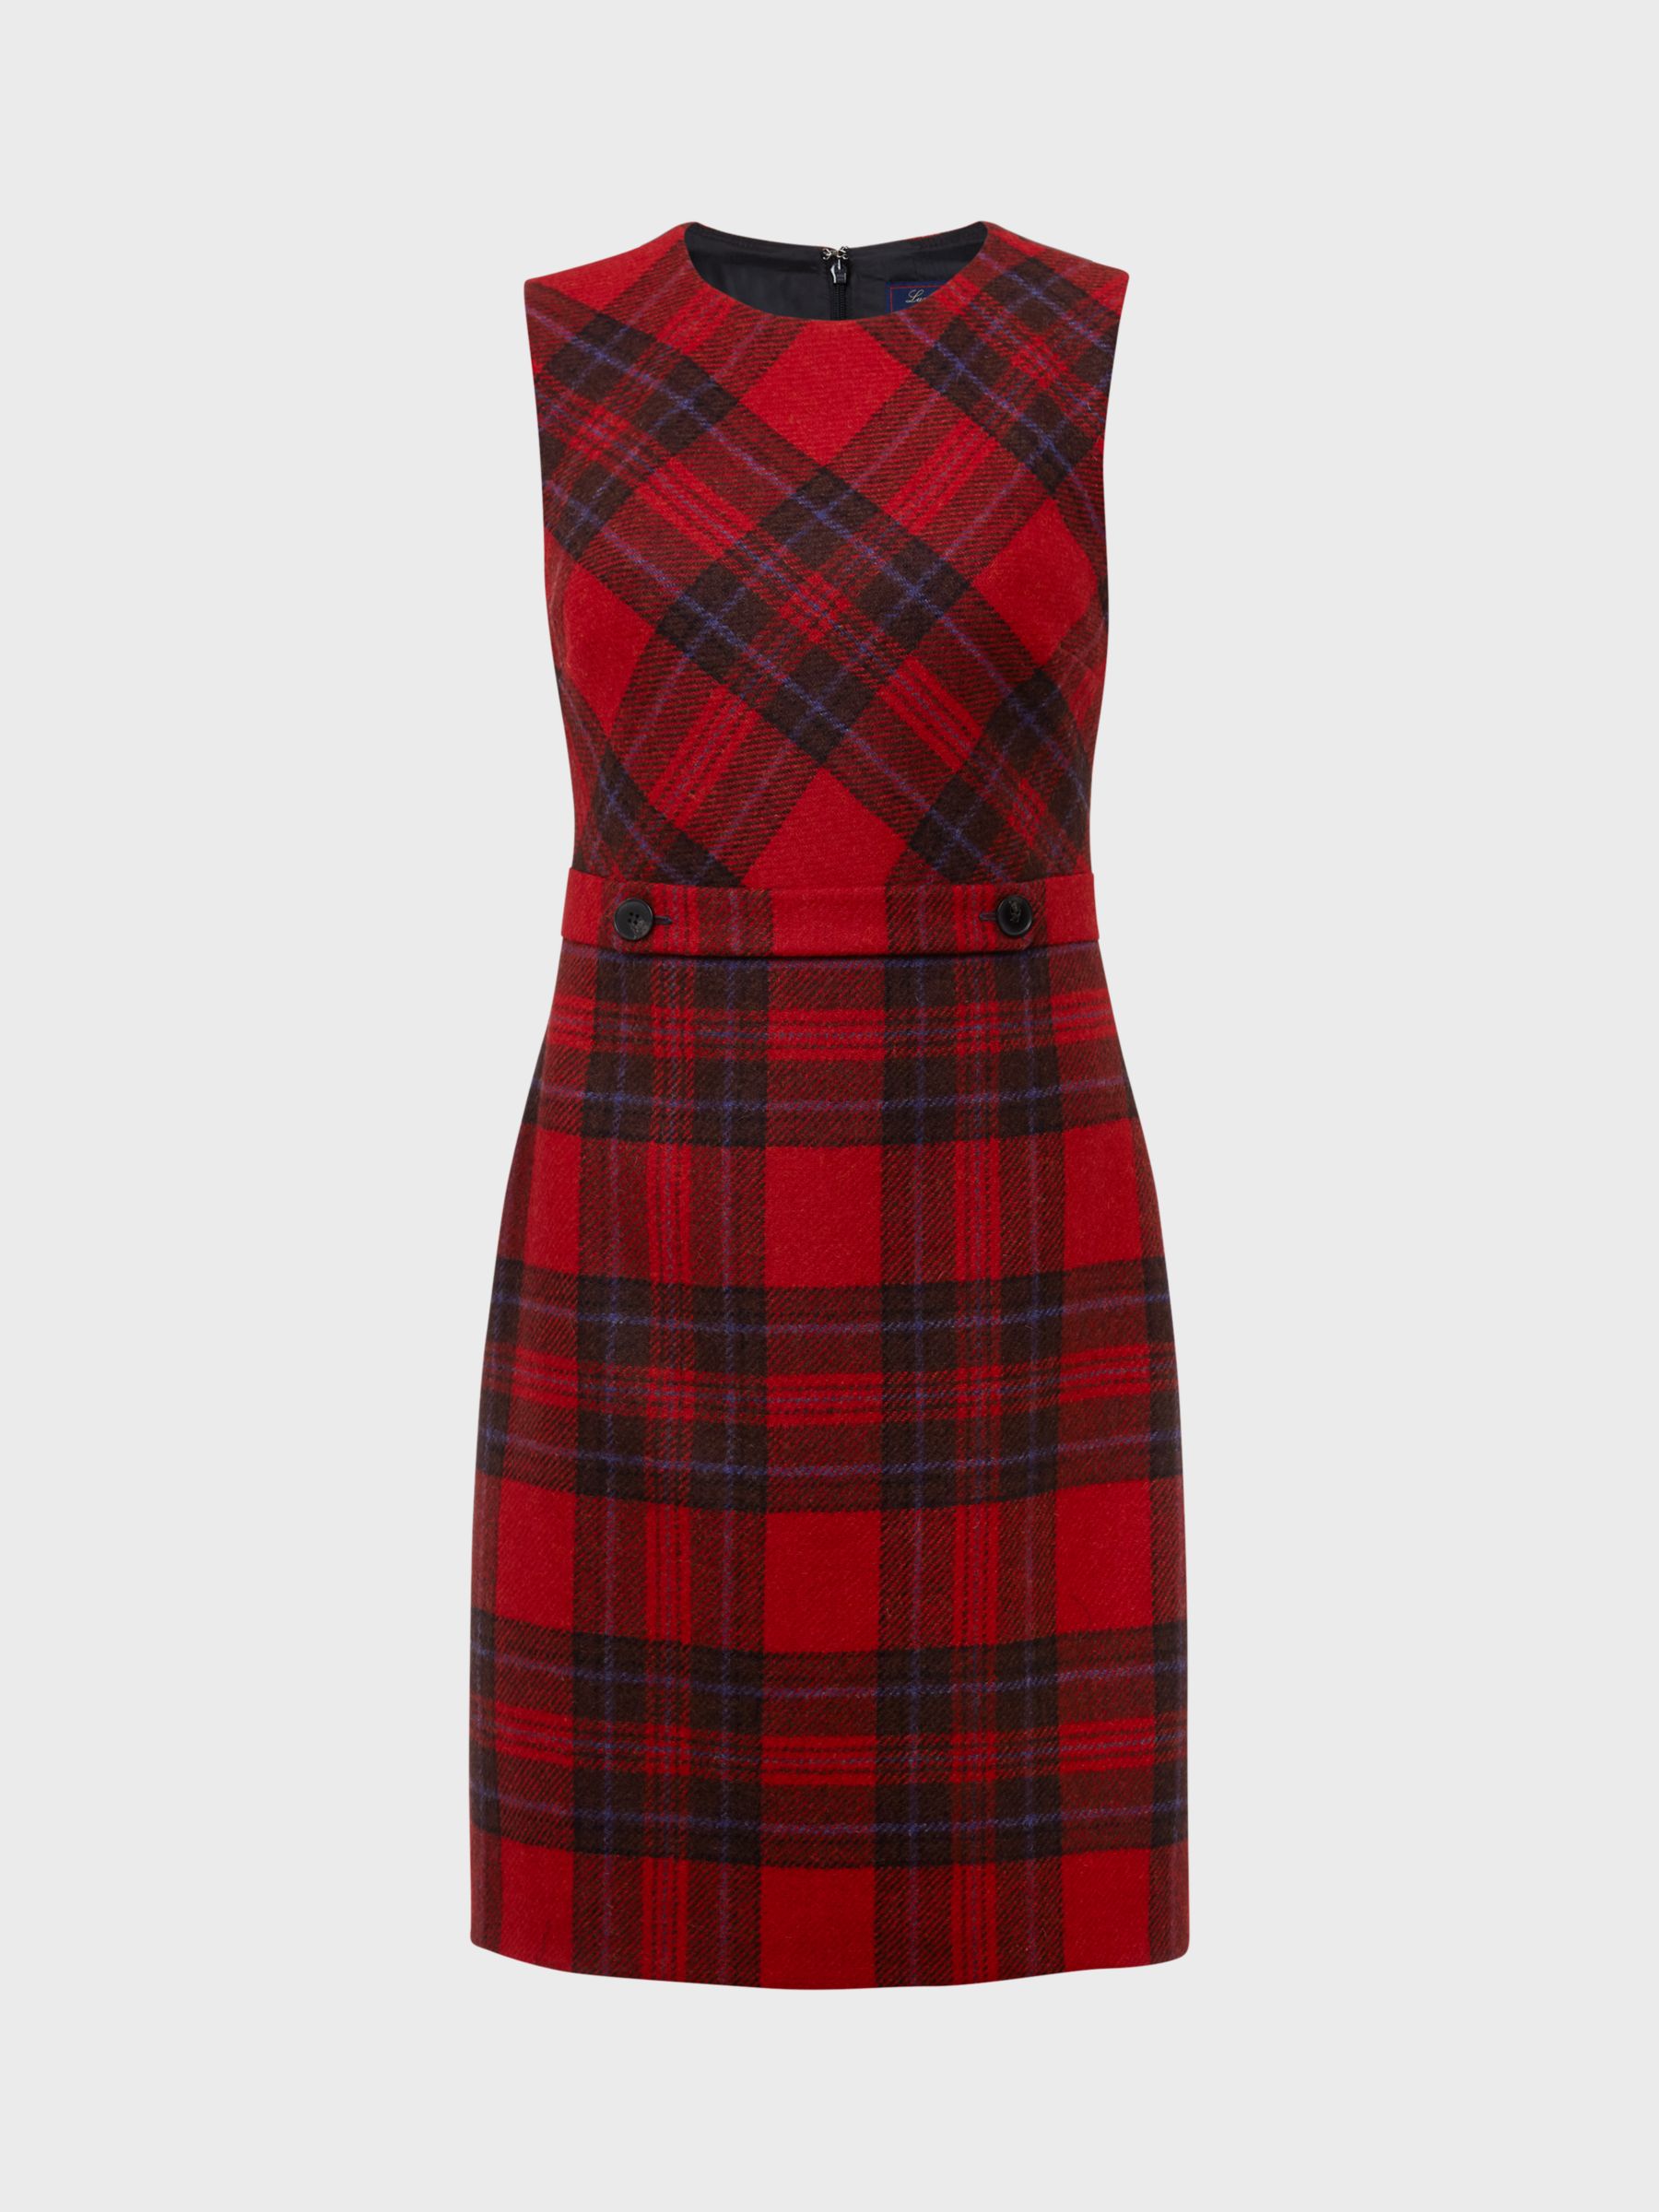 Buy Hobbs Melanie British Tweed A Line Dress, Black/Red Online at johnlewis.com